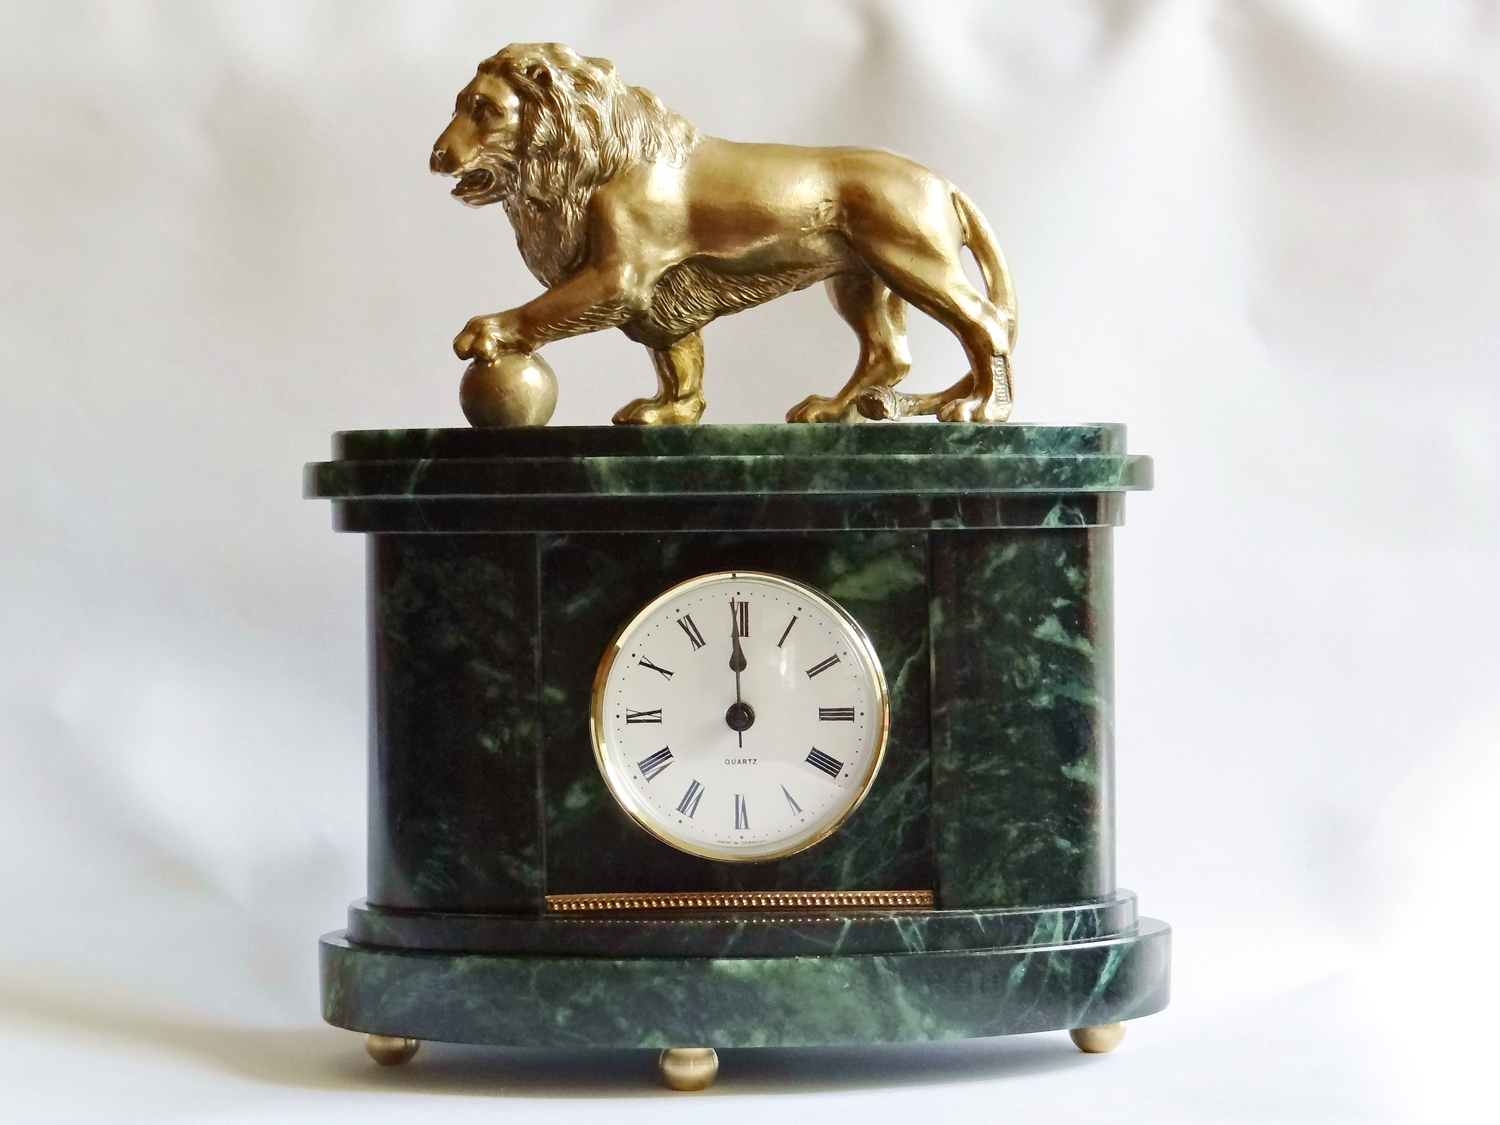 Подарок бизнесмену часы со львом из бронзы и натурального камня.